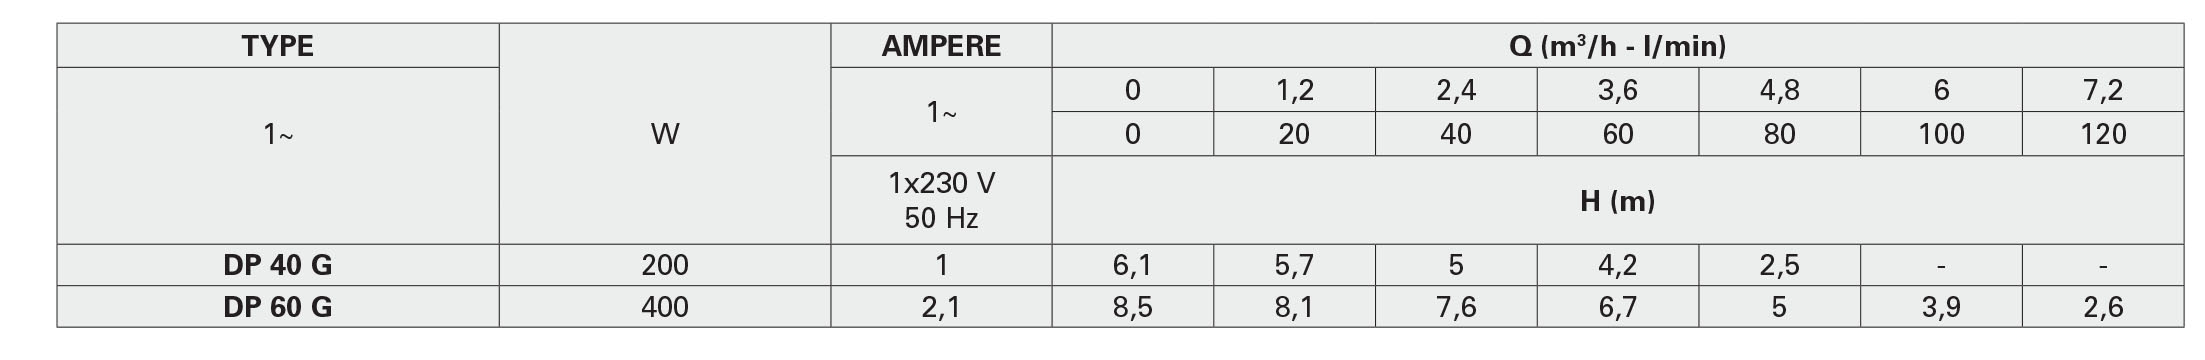 جدول مشخصات هیدرولیکی پمپ کف کش سری DP پنتاکس